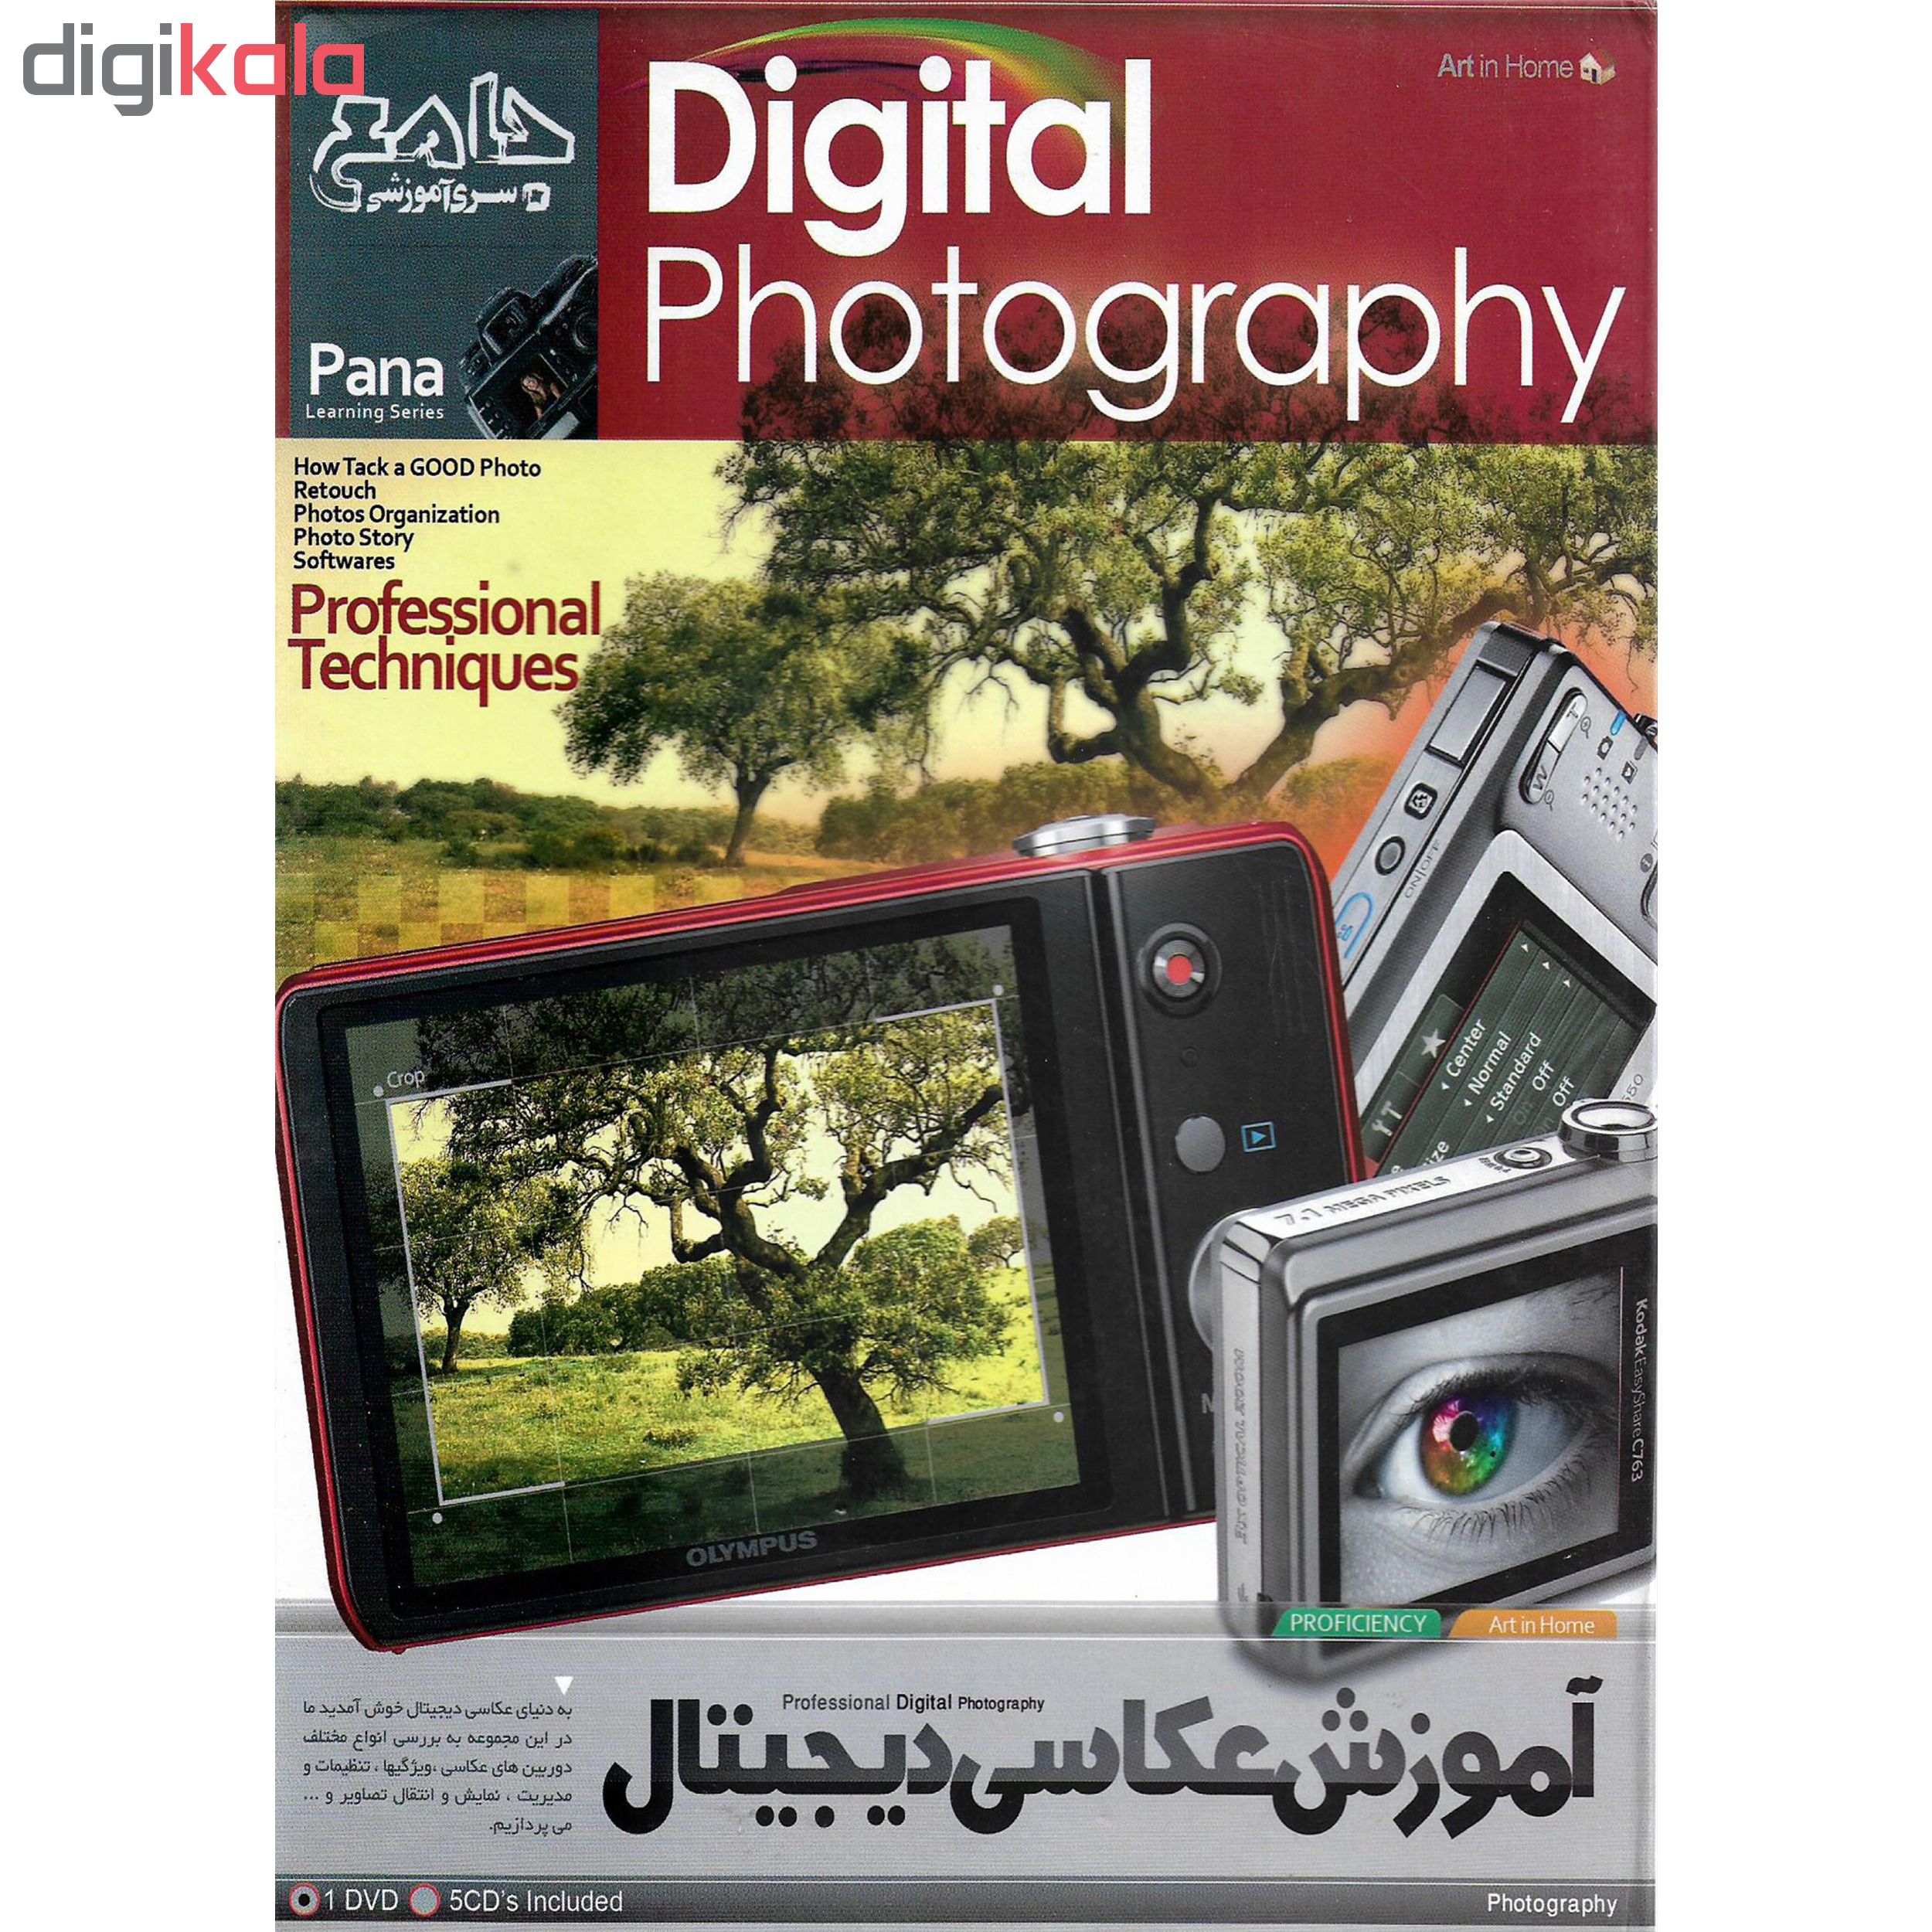 نرم افزار آموزش عکاسی دیجیتال نشر پانا به همراه نرم افزار آموزش عکاسی حرفه ای PANORAMA نشر پانا